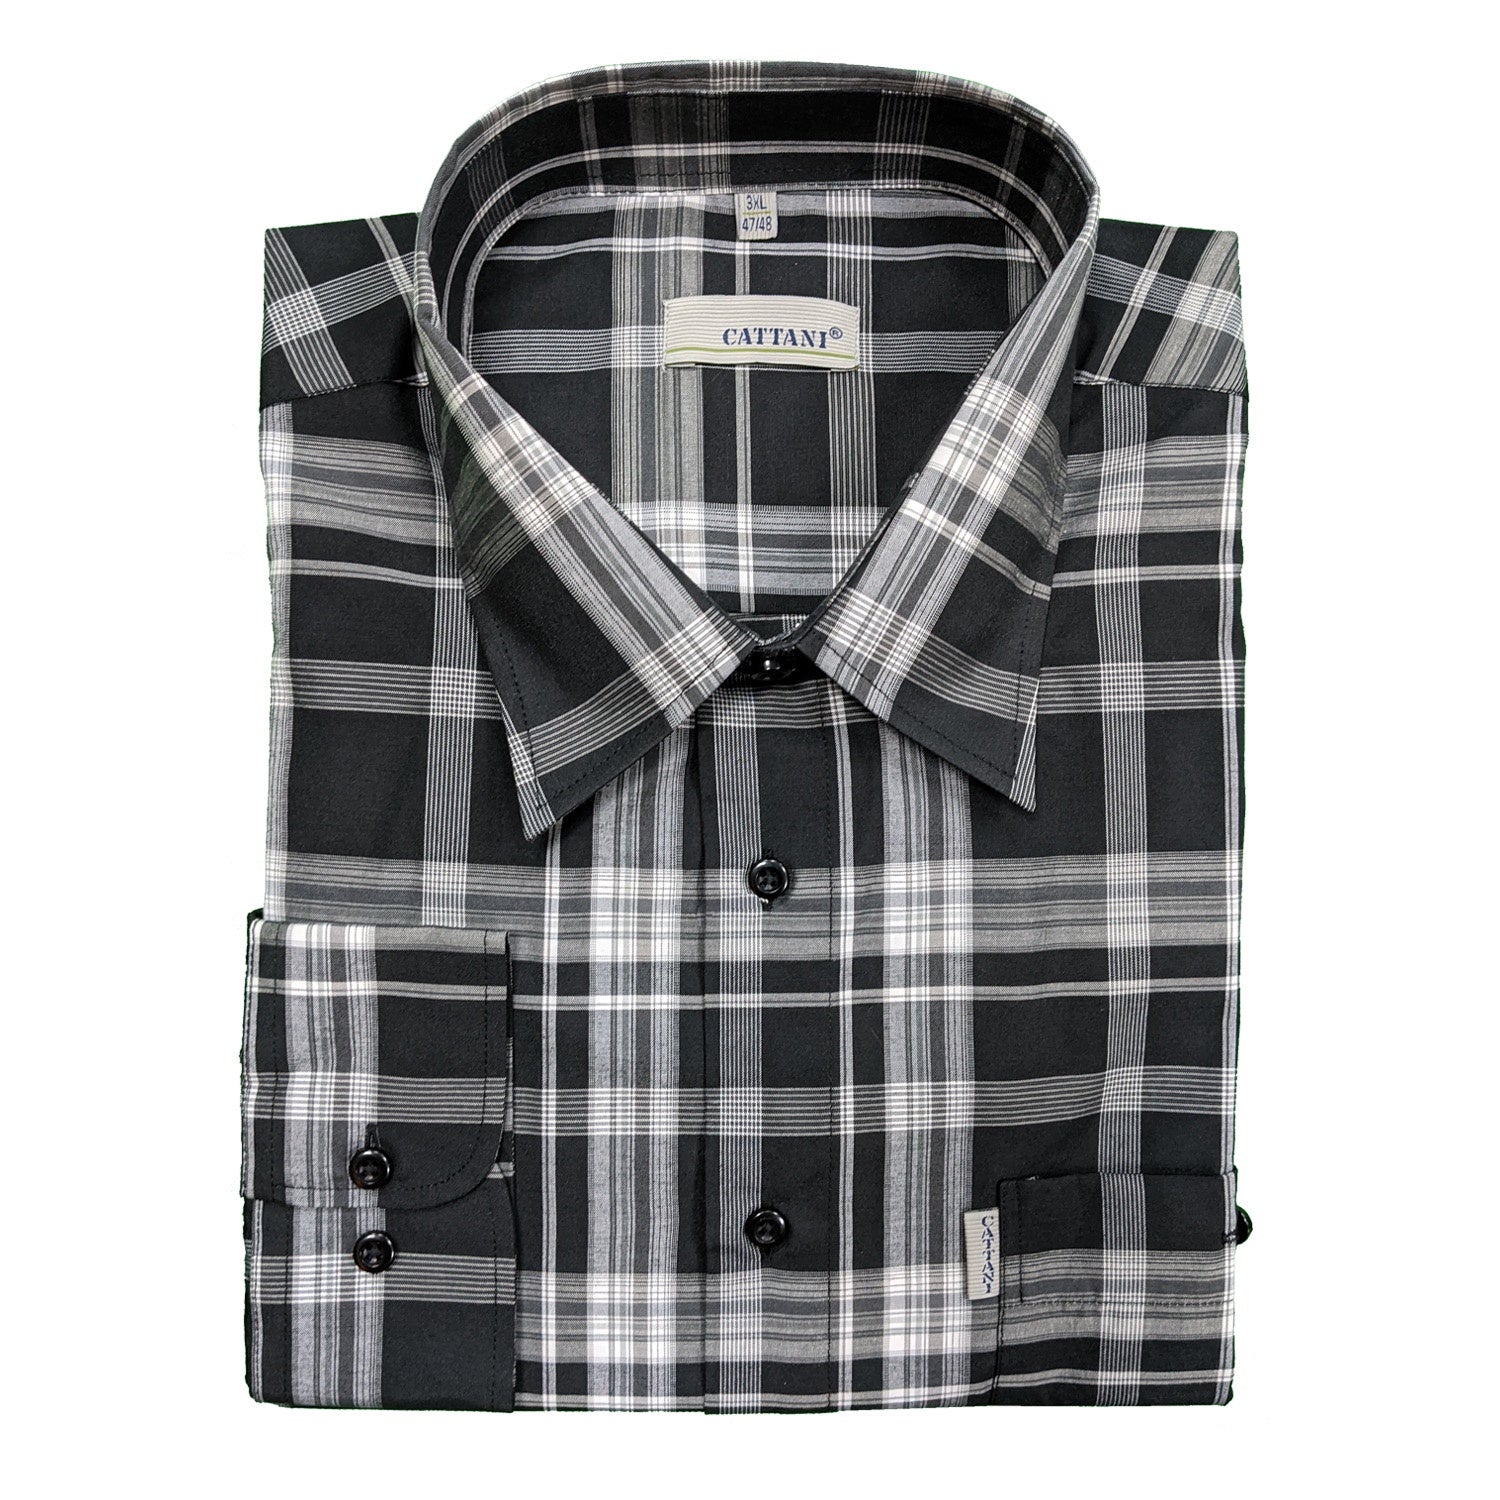 Cattani L/S Shirt - 40198 - Black / Grey 1